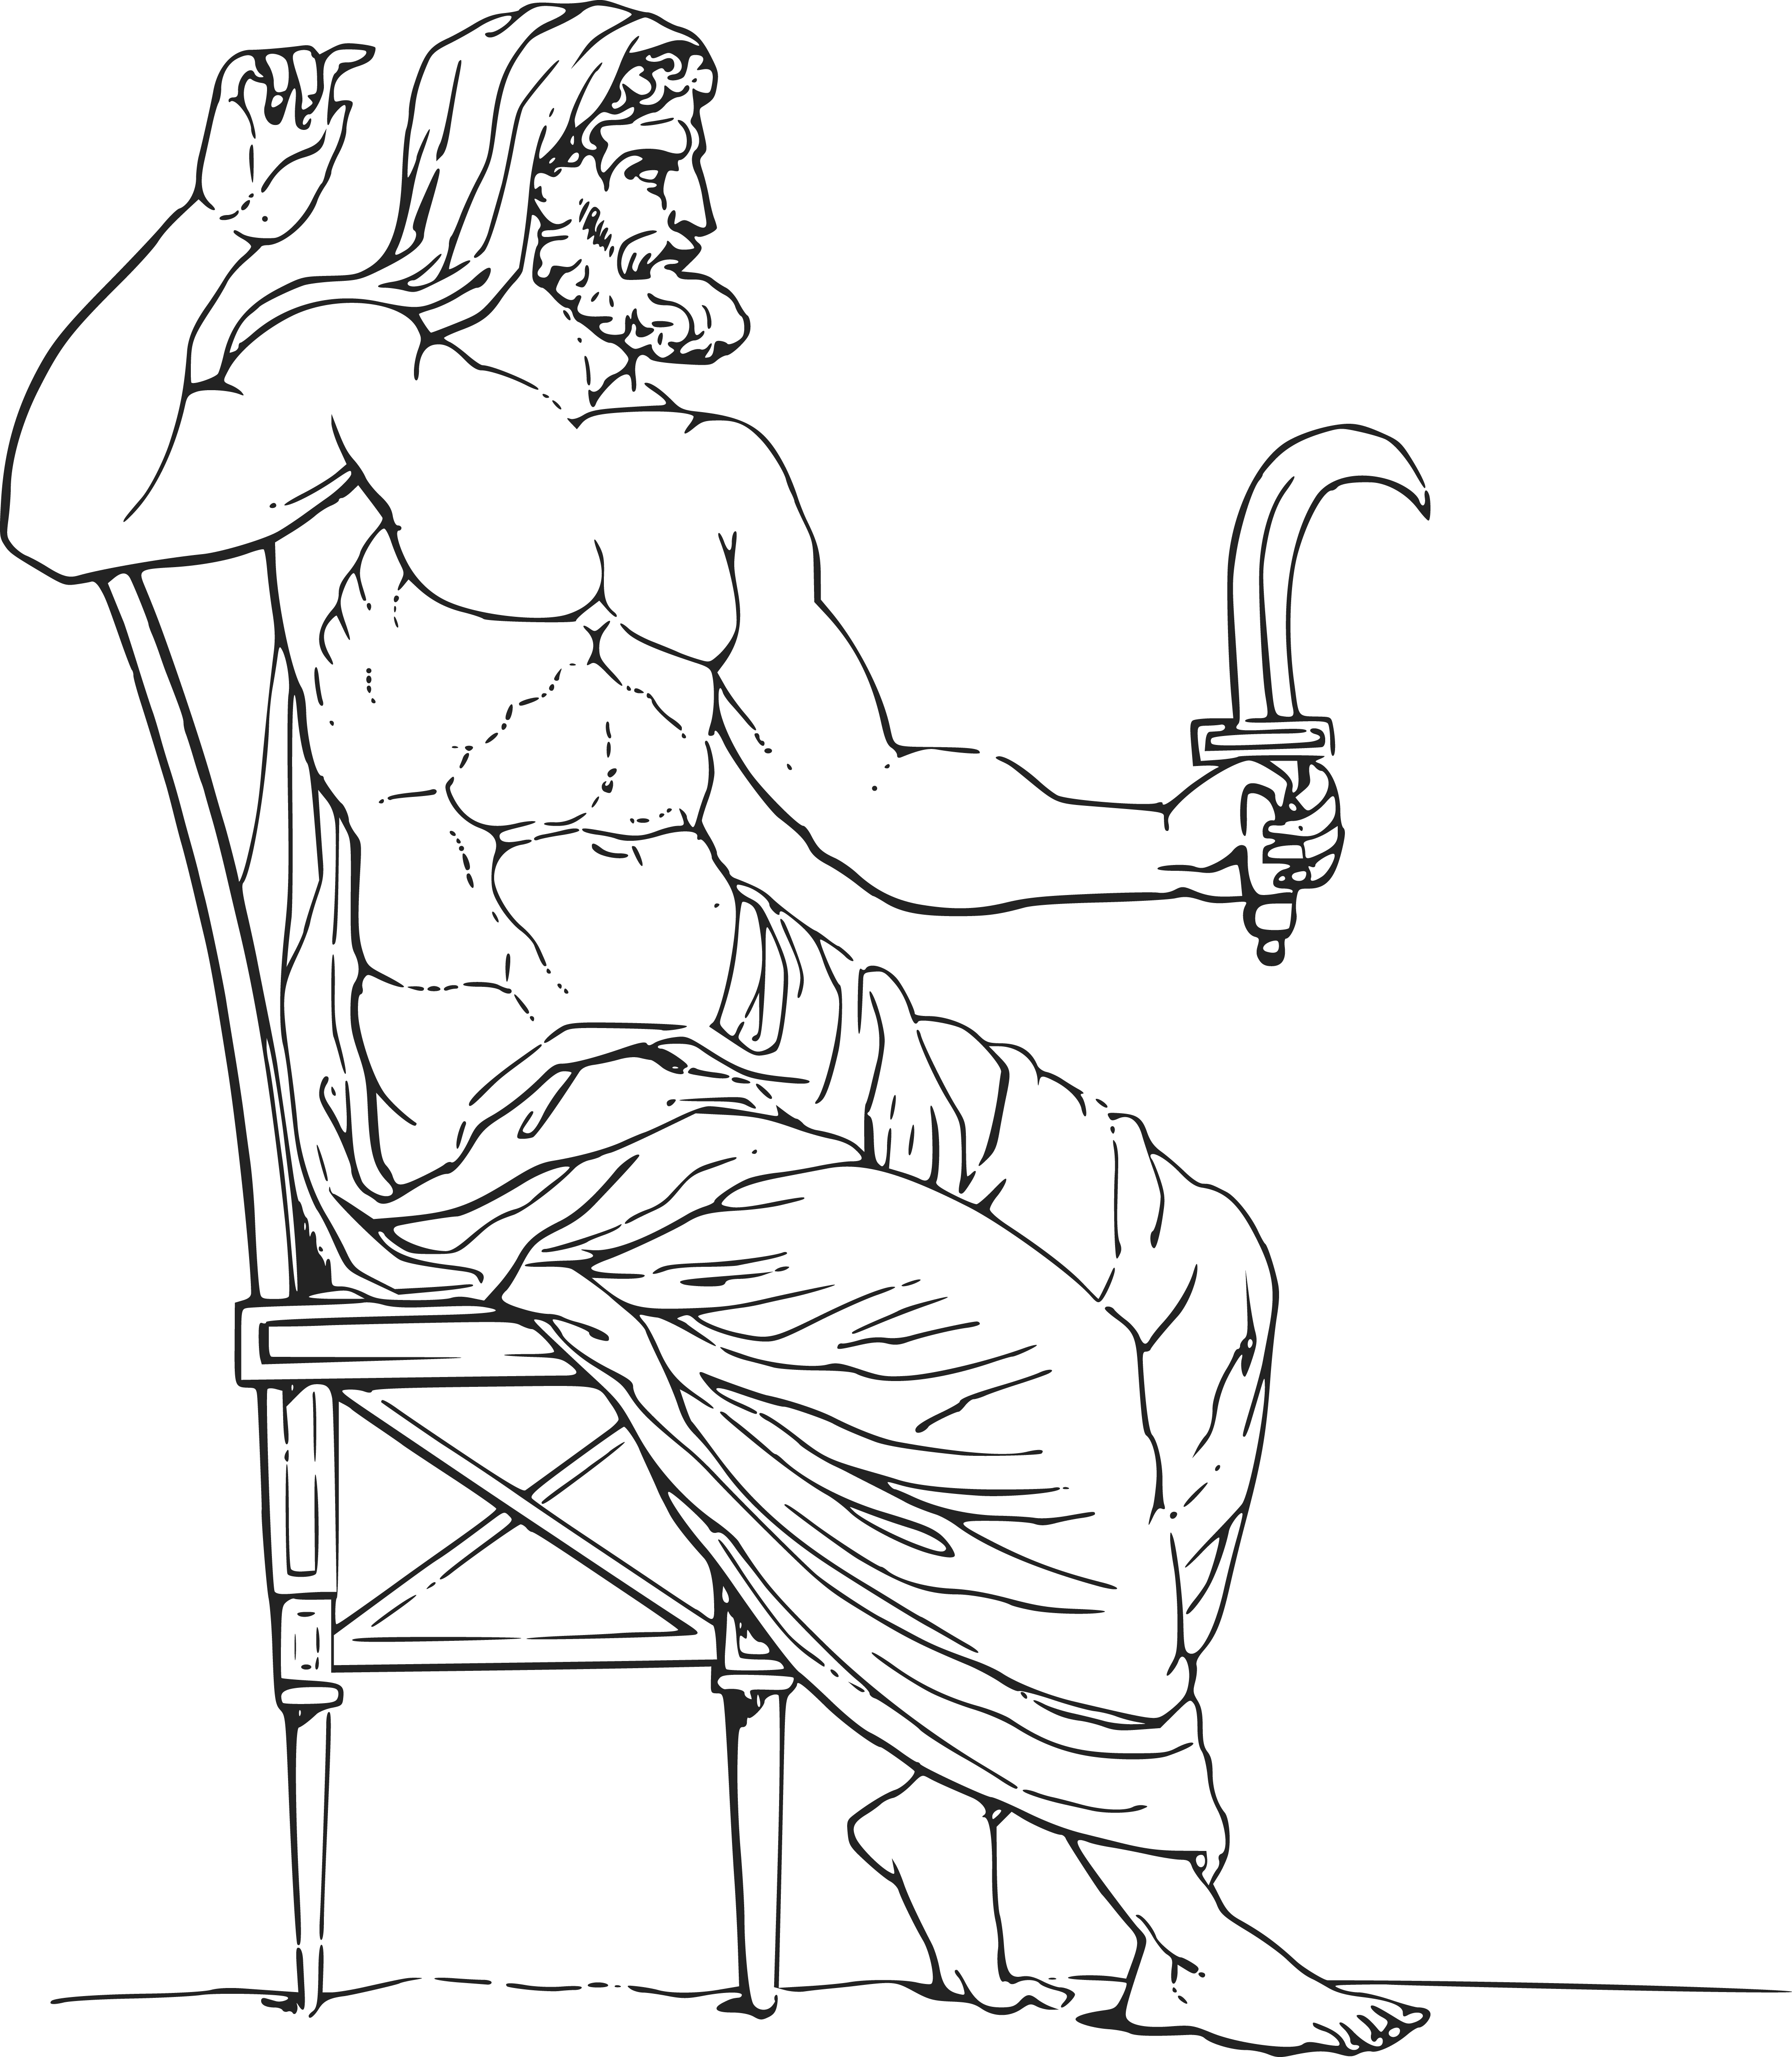 Mythology PNG Image File